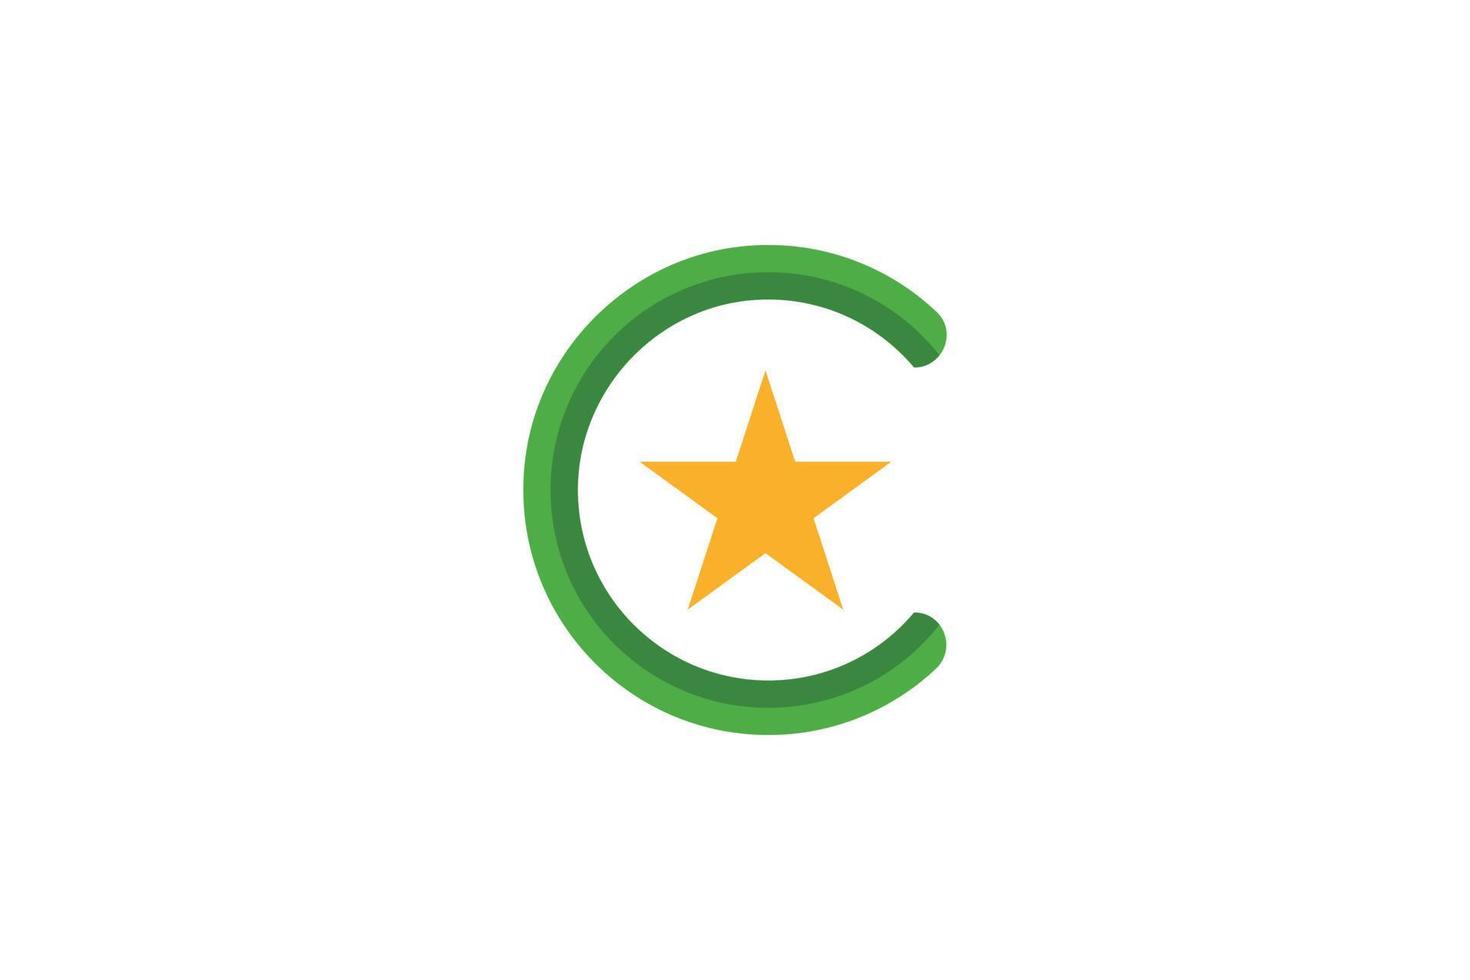 Modern Letter C Logo vector